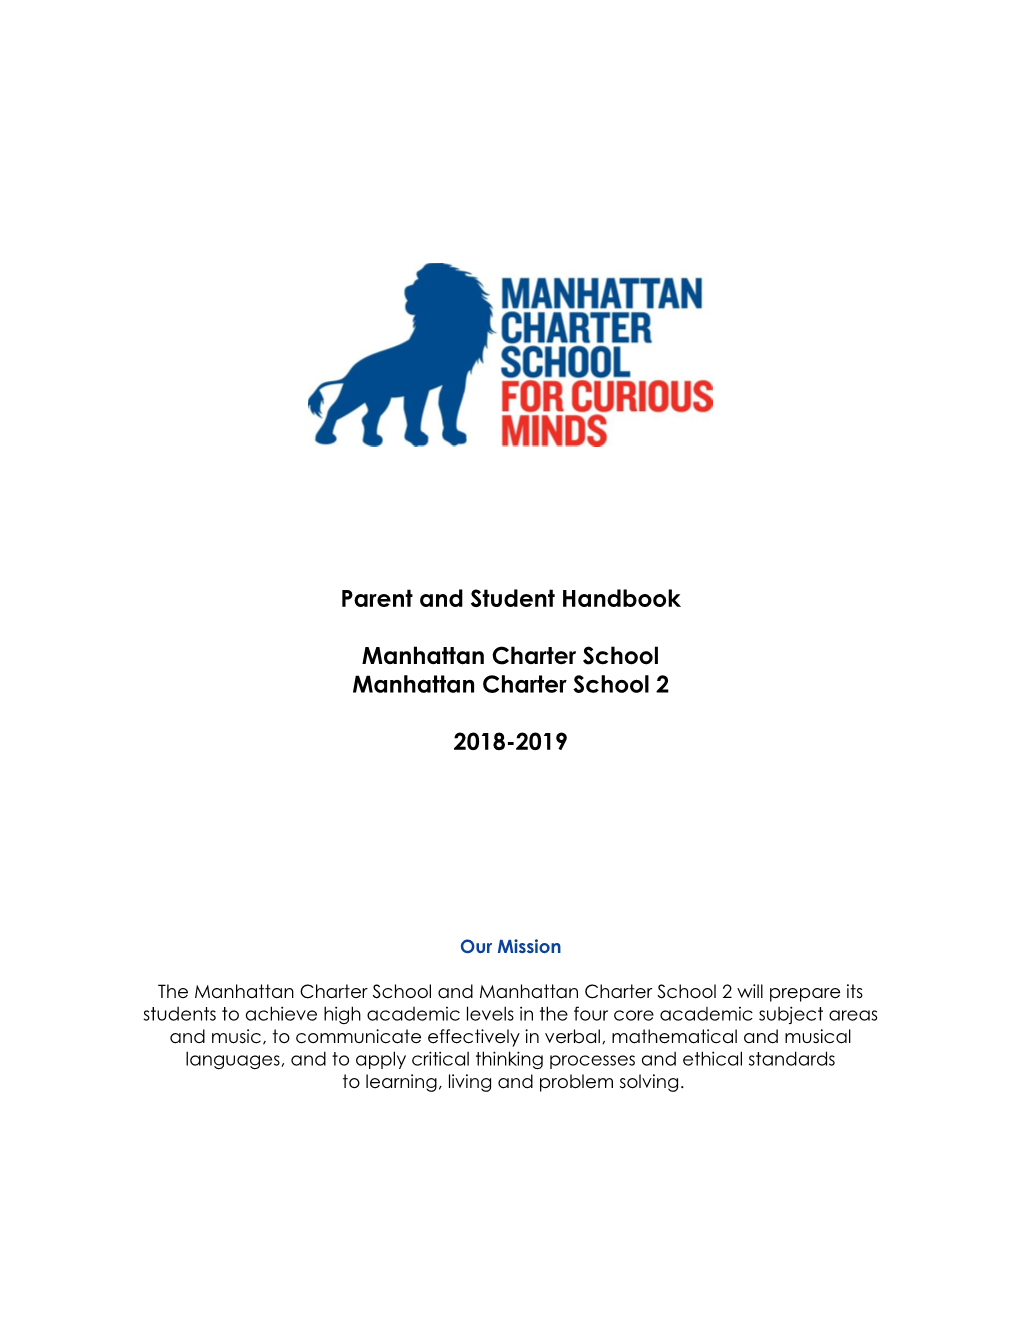 Parent-Handbook-2018-2019.Pdf